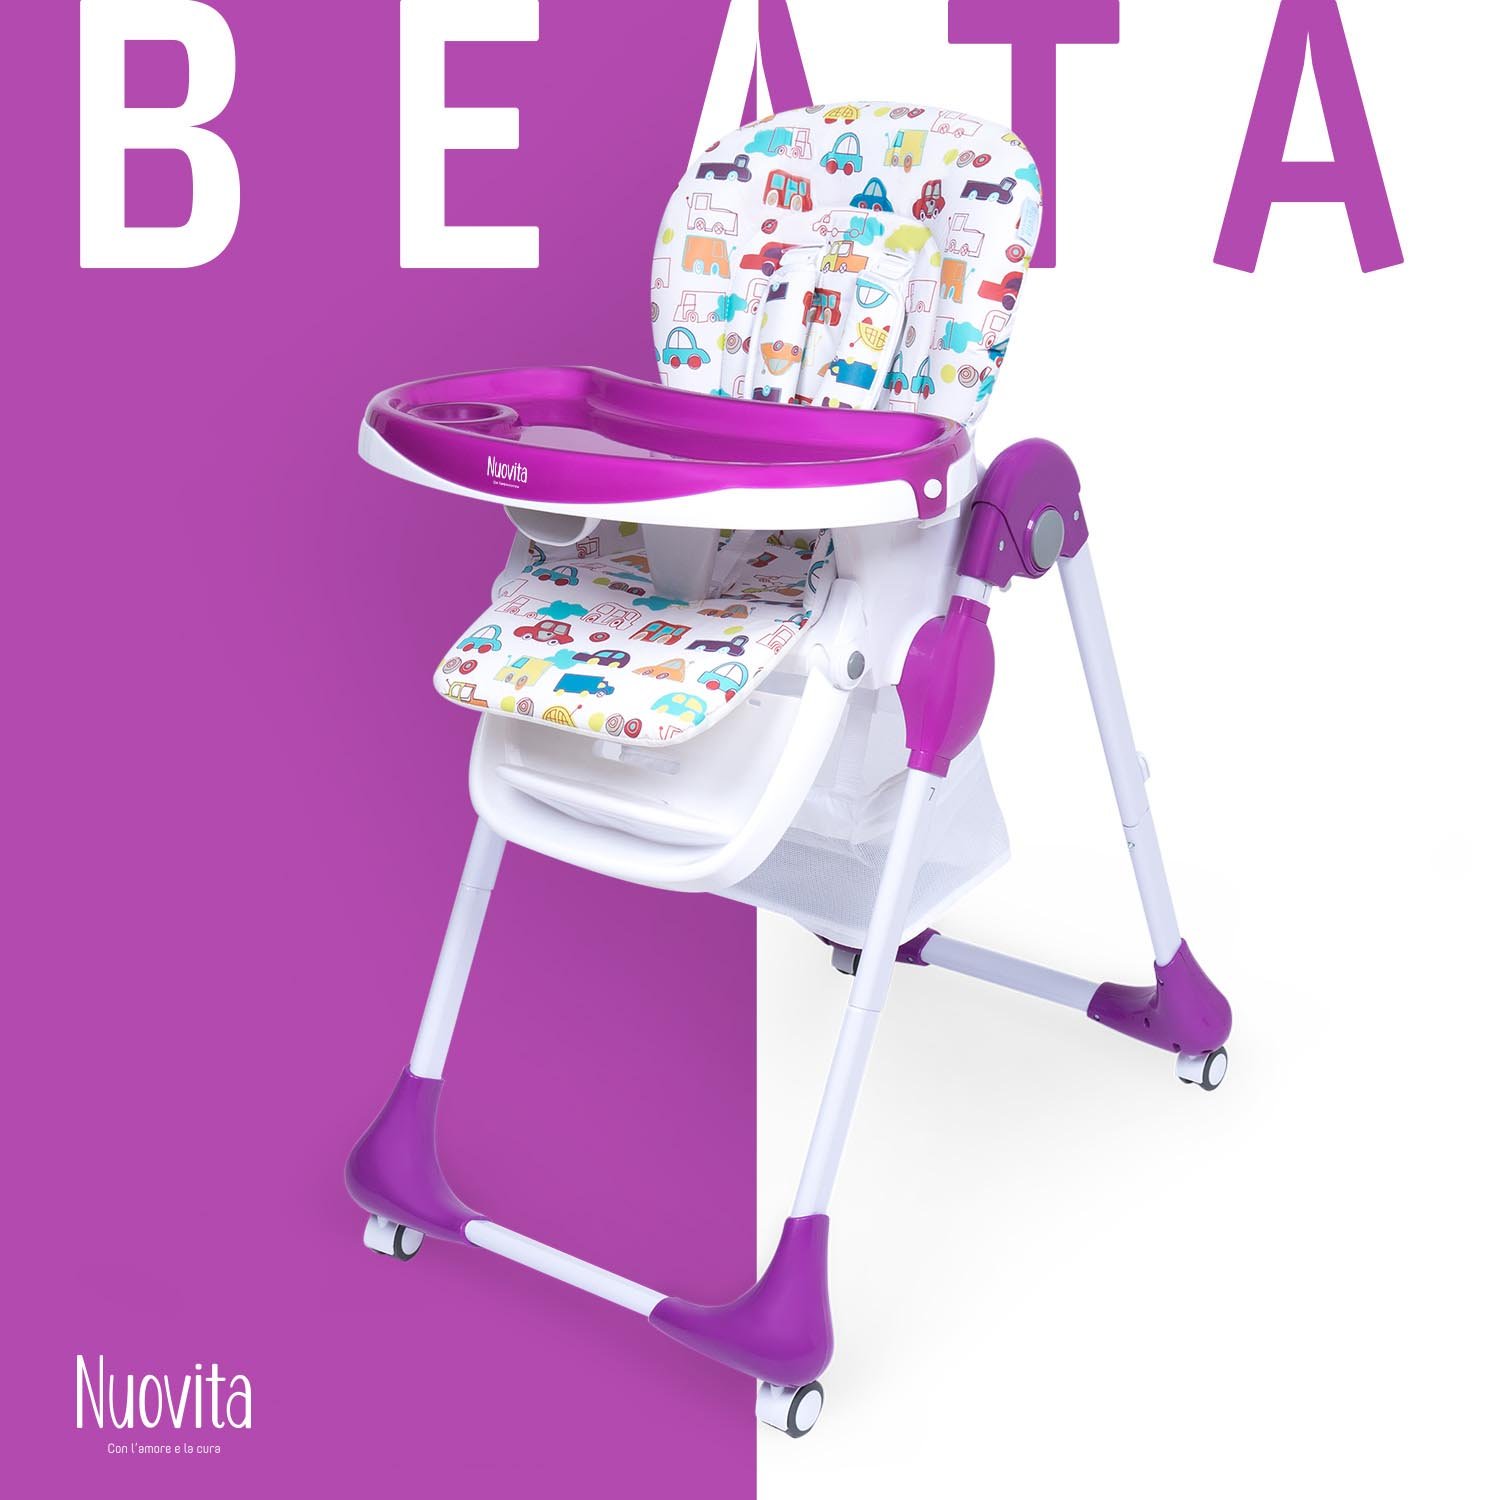 Стульчик для кормления Nuovita Beata (Macchine) стульчик для кормления nuovita beata